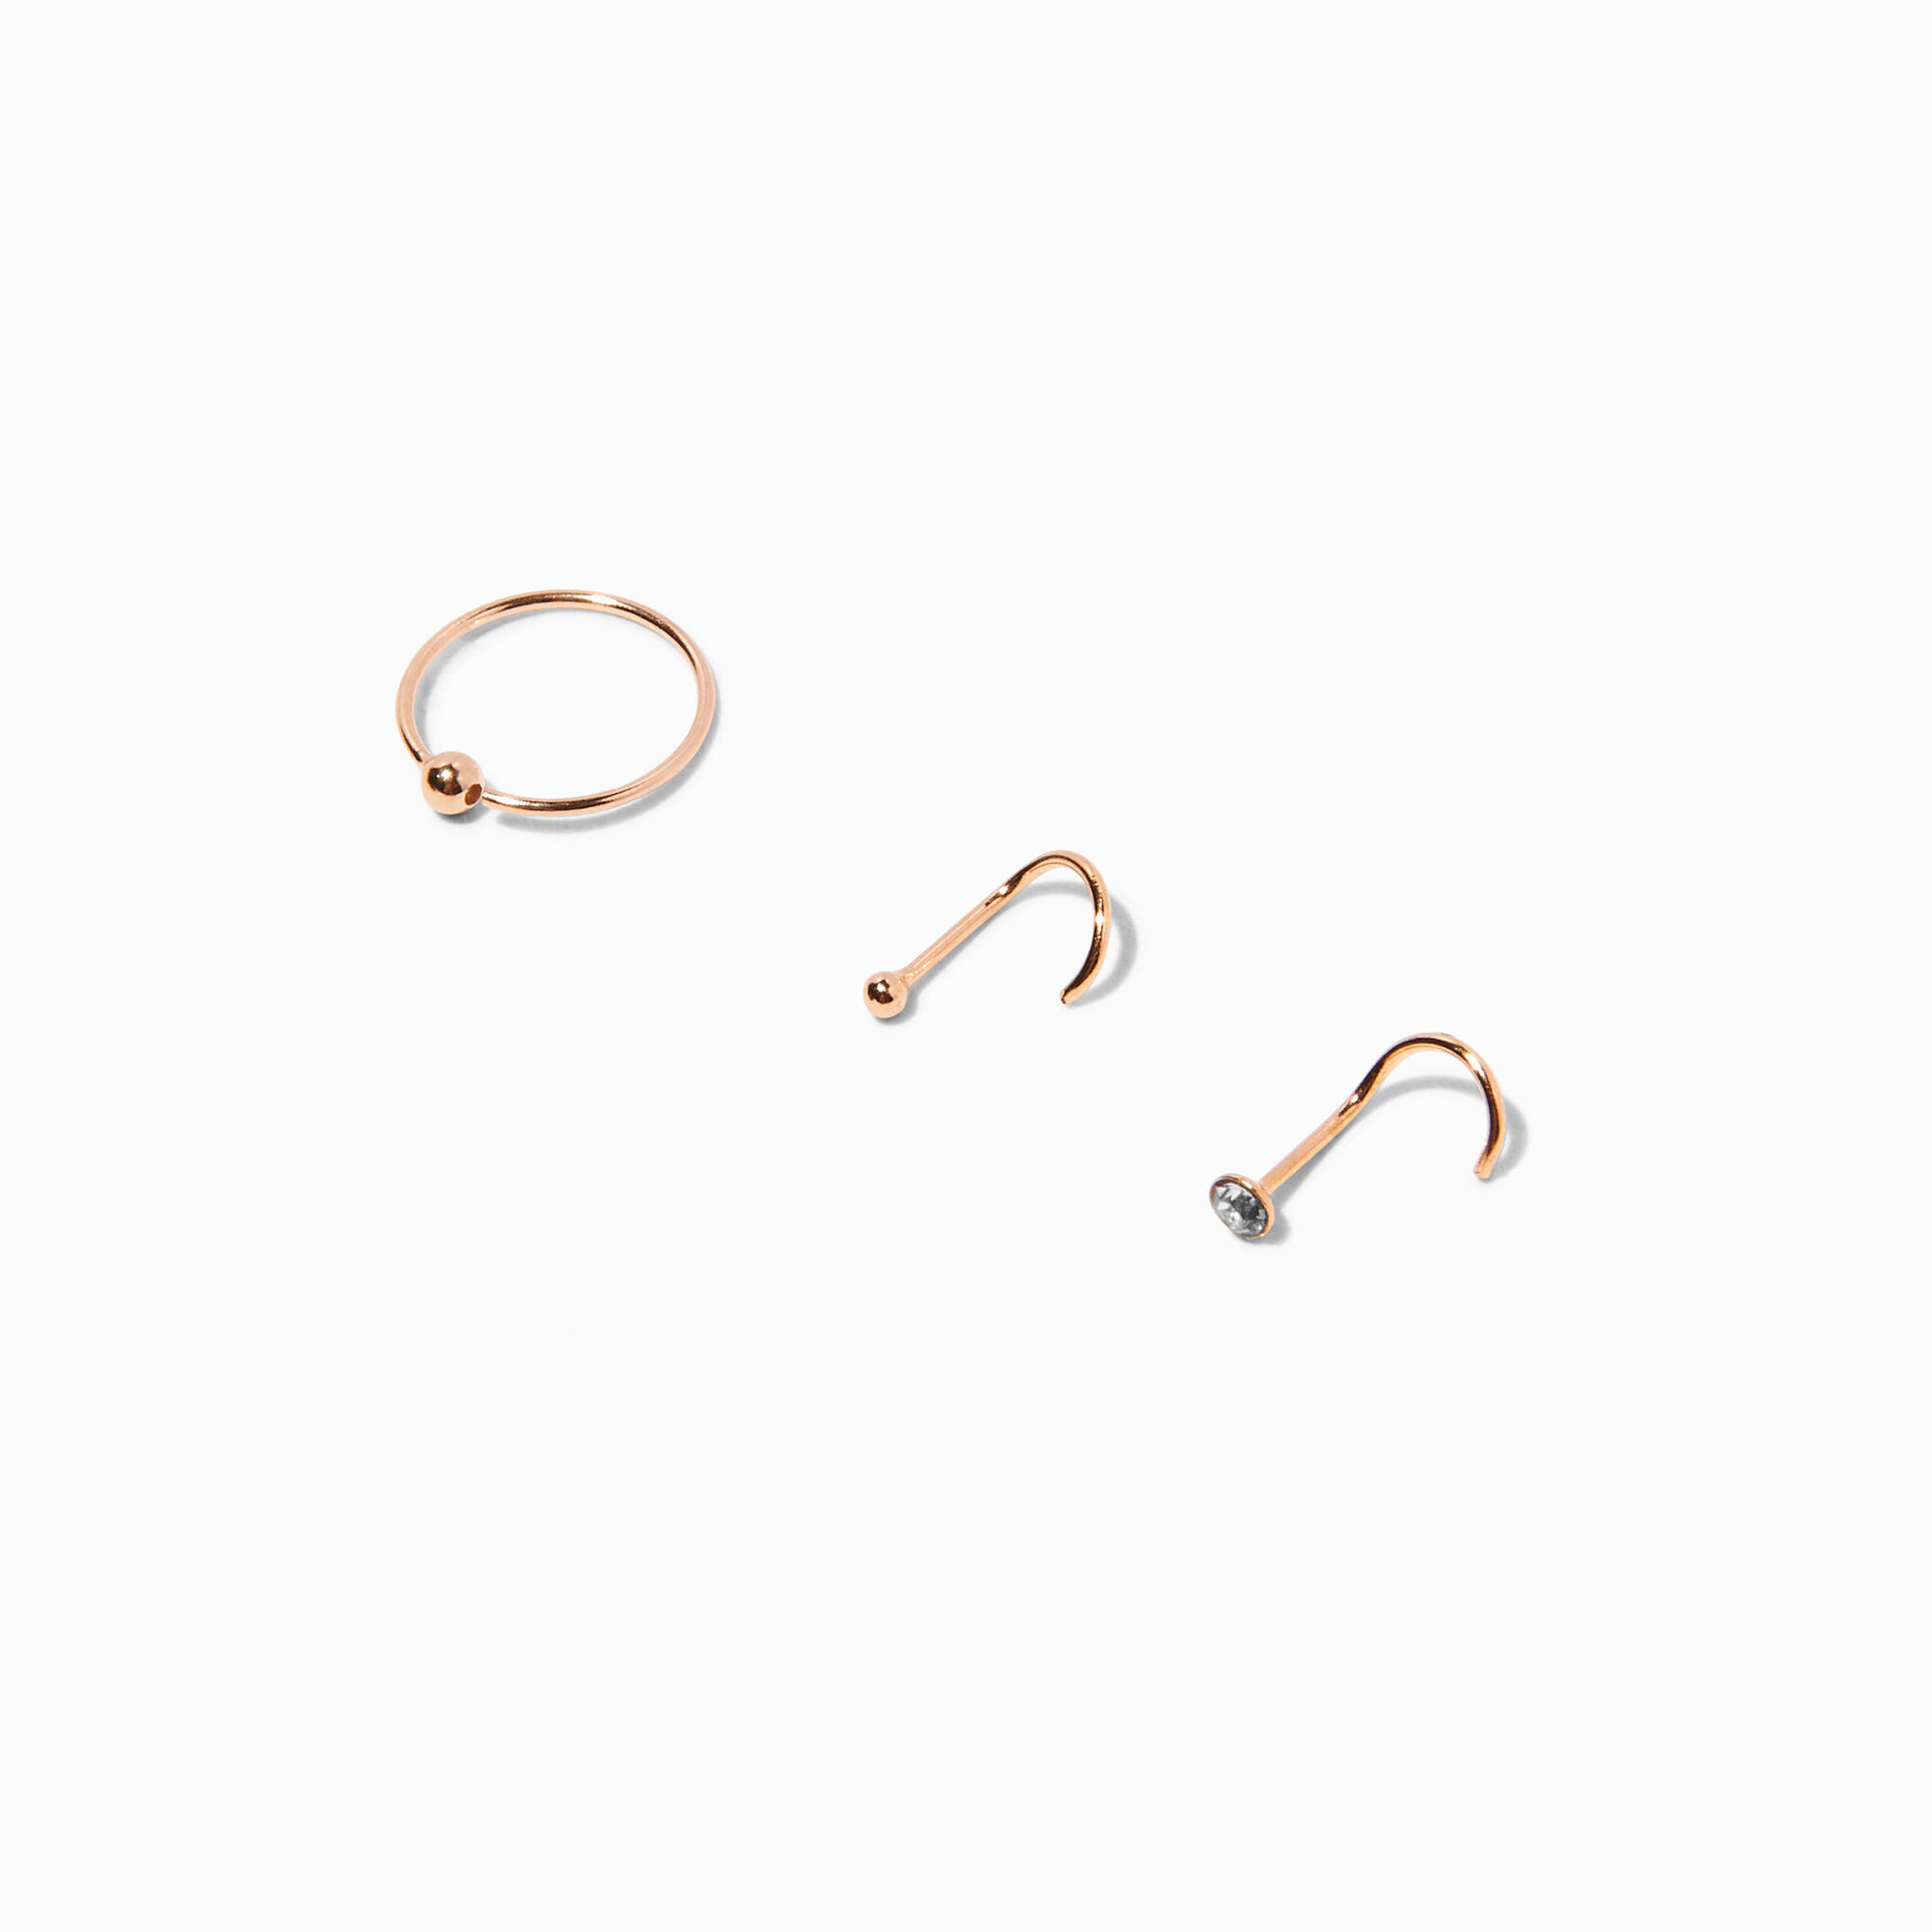 Rose Gold Nose Hoop Ring 22 Gauge (0.75mm) 5/16